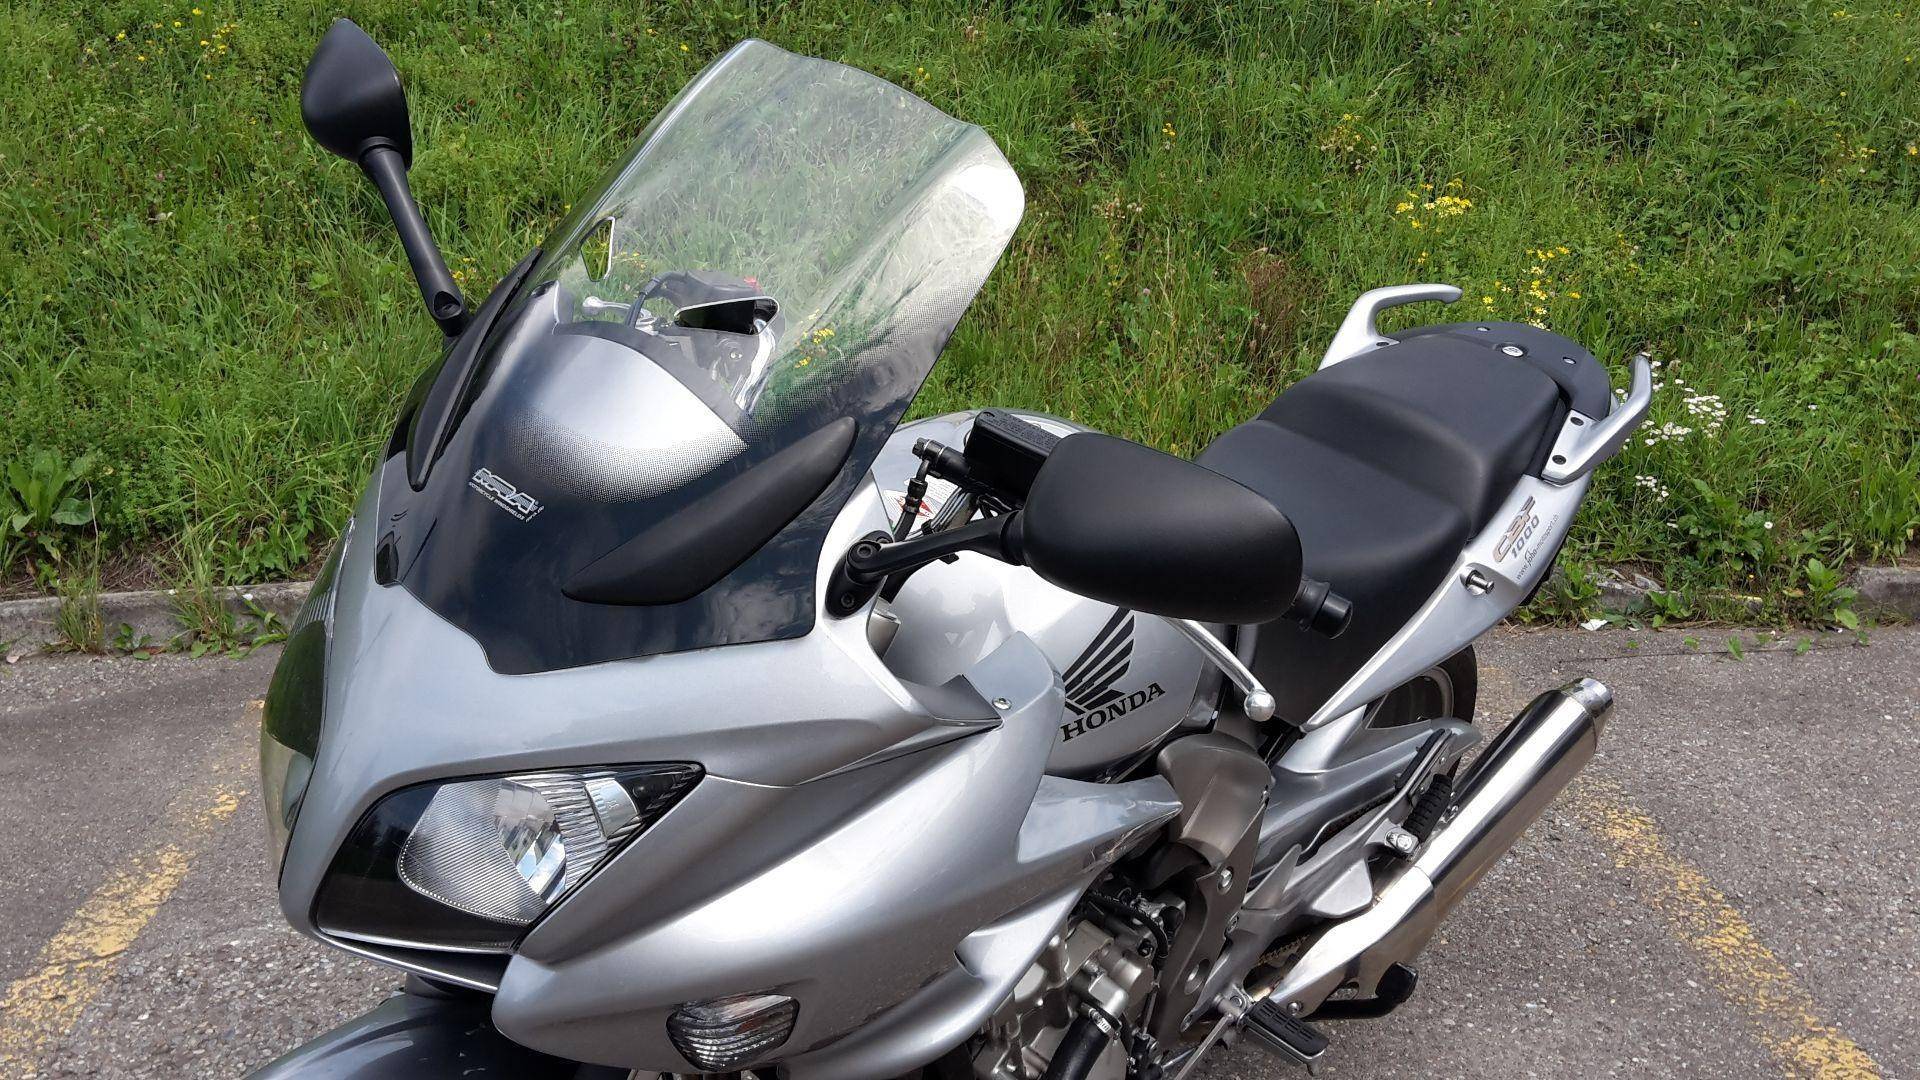 Мотоцикл honda cbf 1000 f abs 2011: излагаем суть